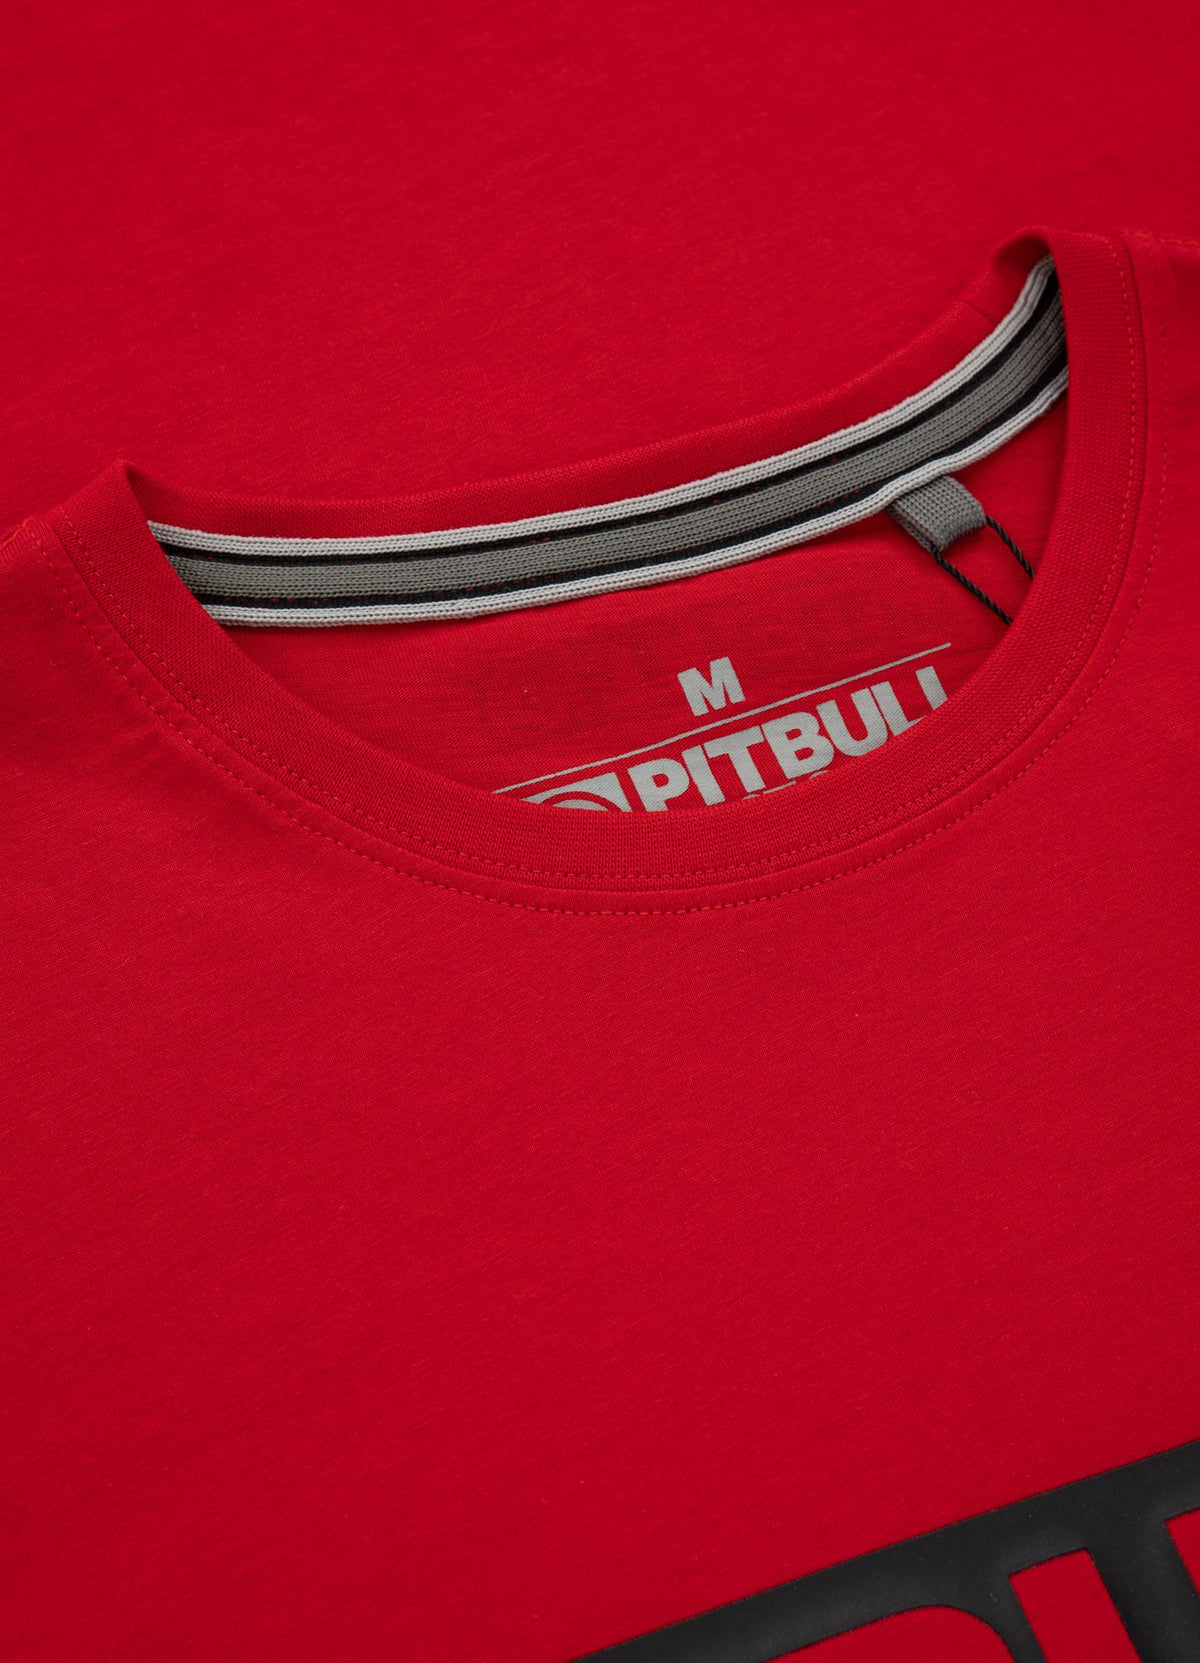 HILLTOP Lightweight Red T-shirt